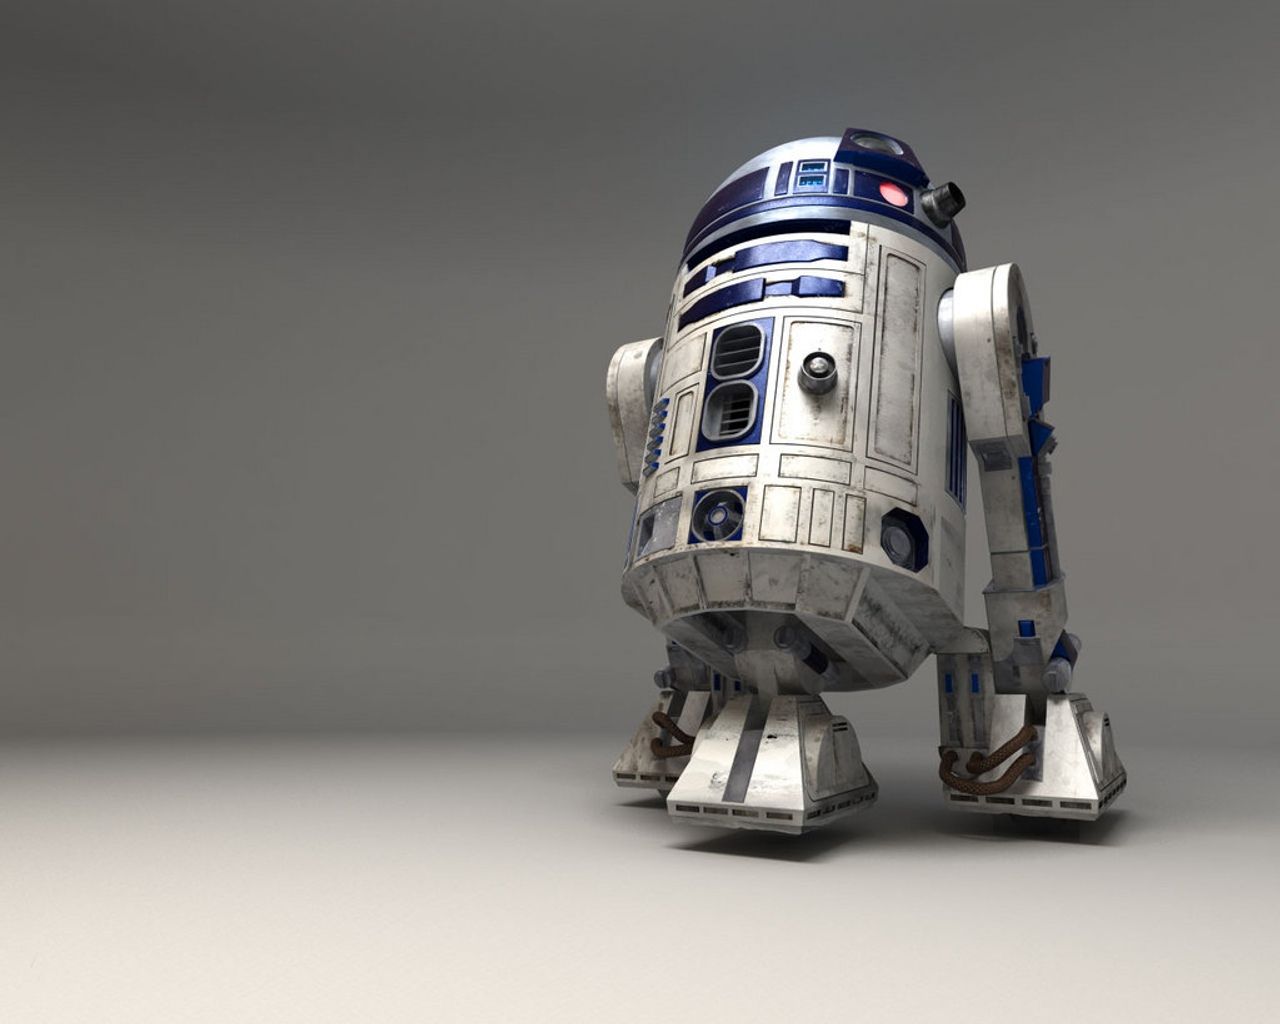 Droid R2D2 star wars droid #R2D2 #starwars #Droid #Wallpaper. Star wars wallpaper, Star wars droids, Star wars r2d2